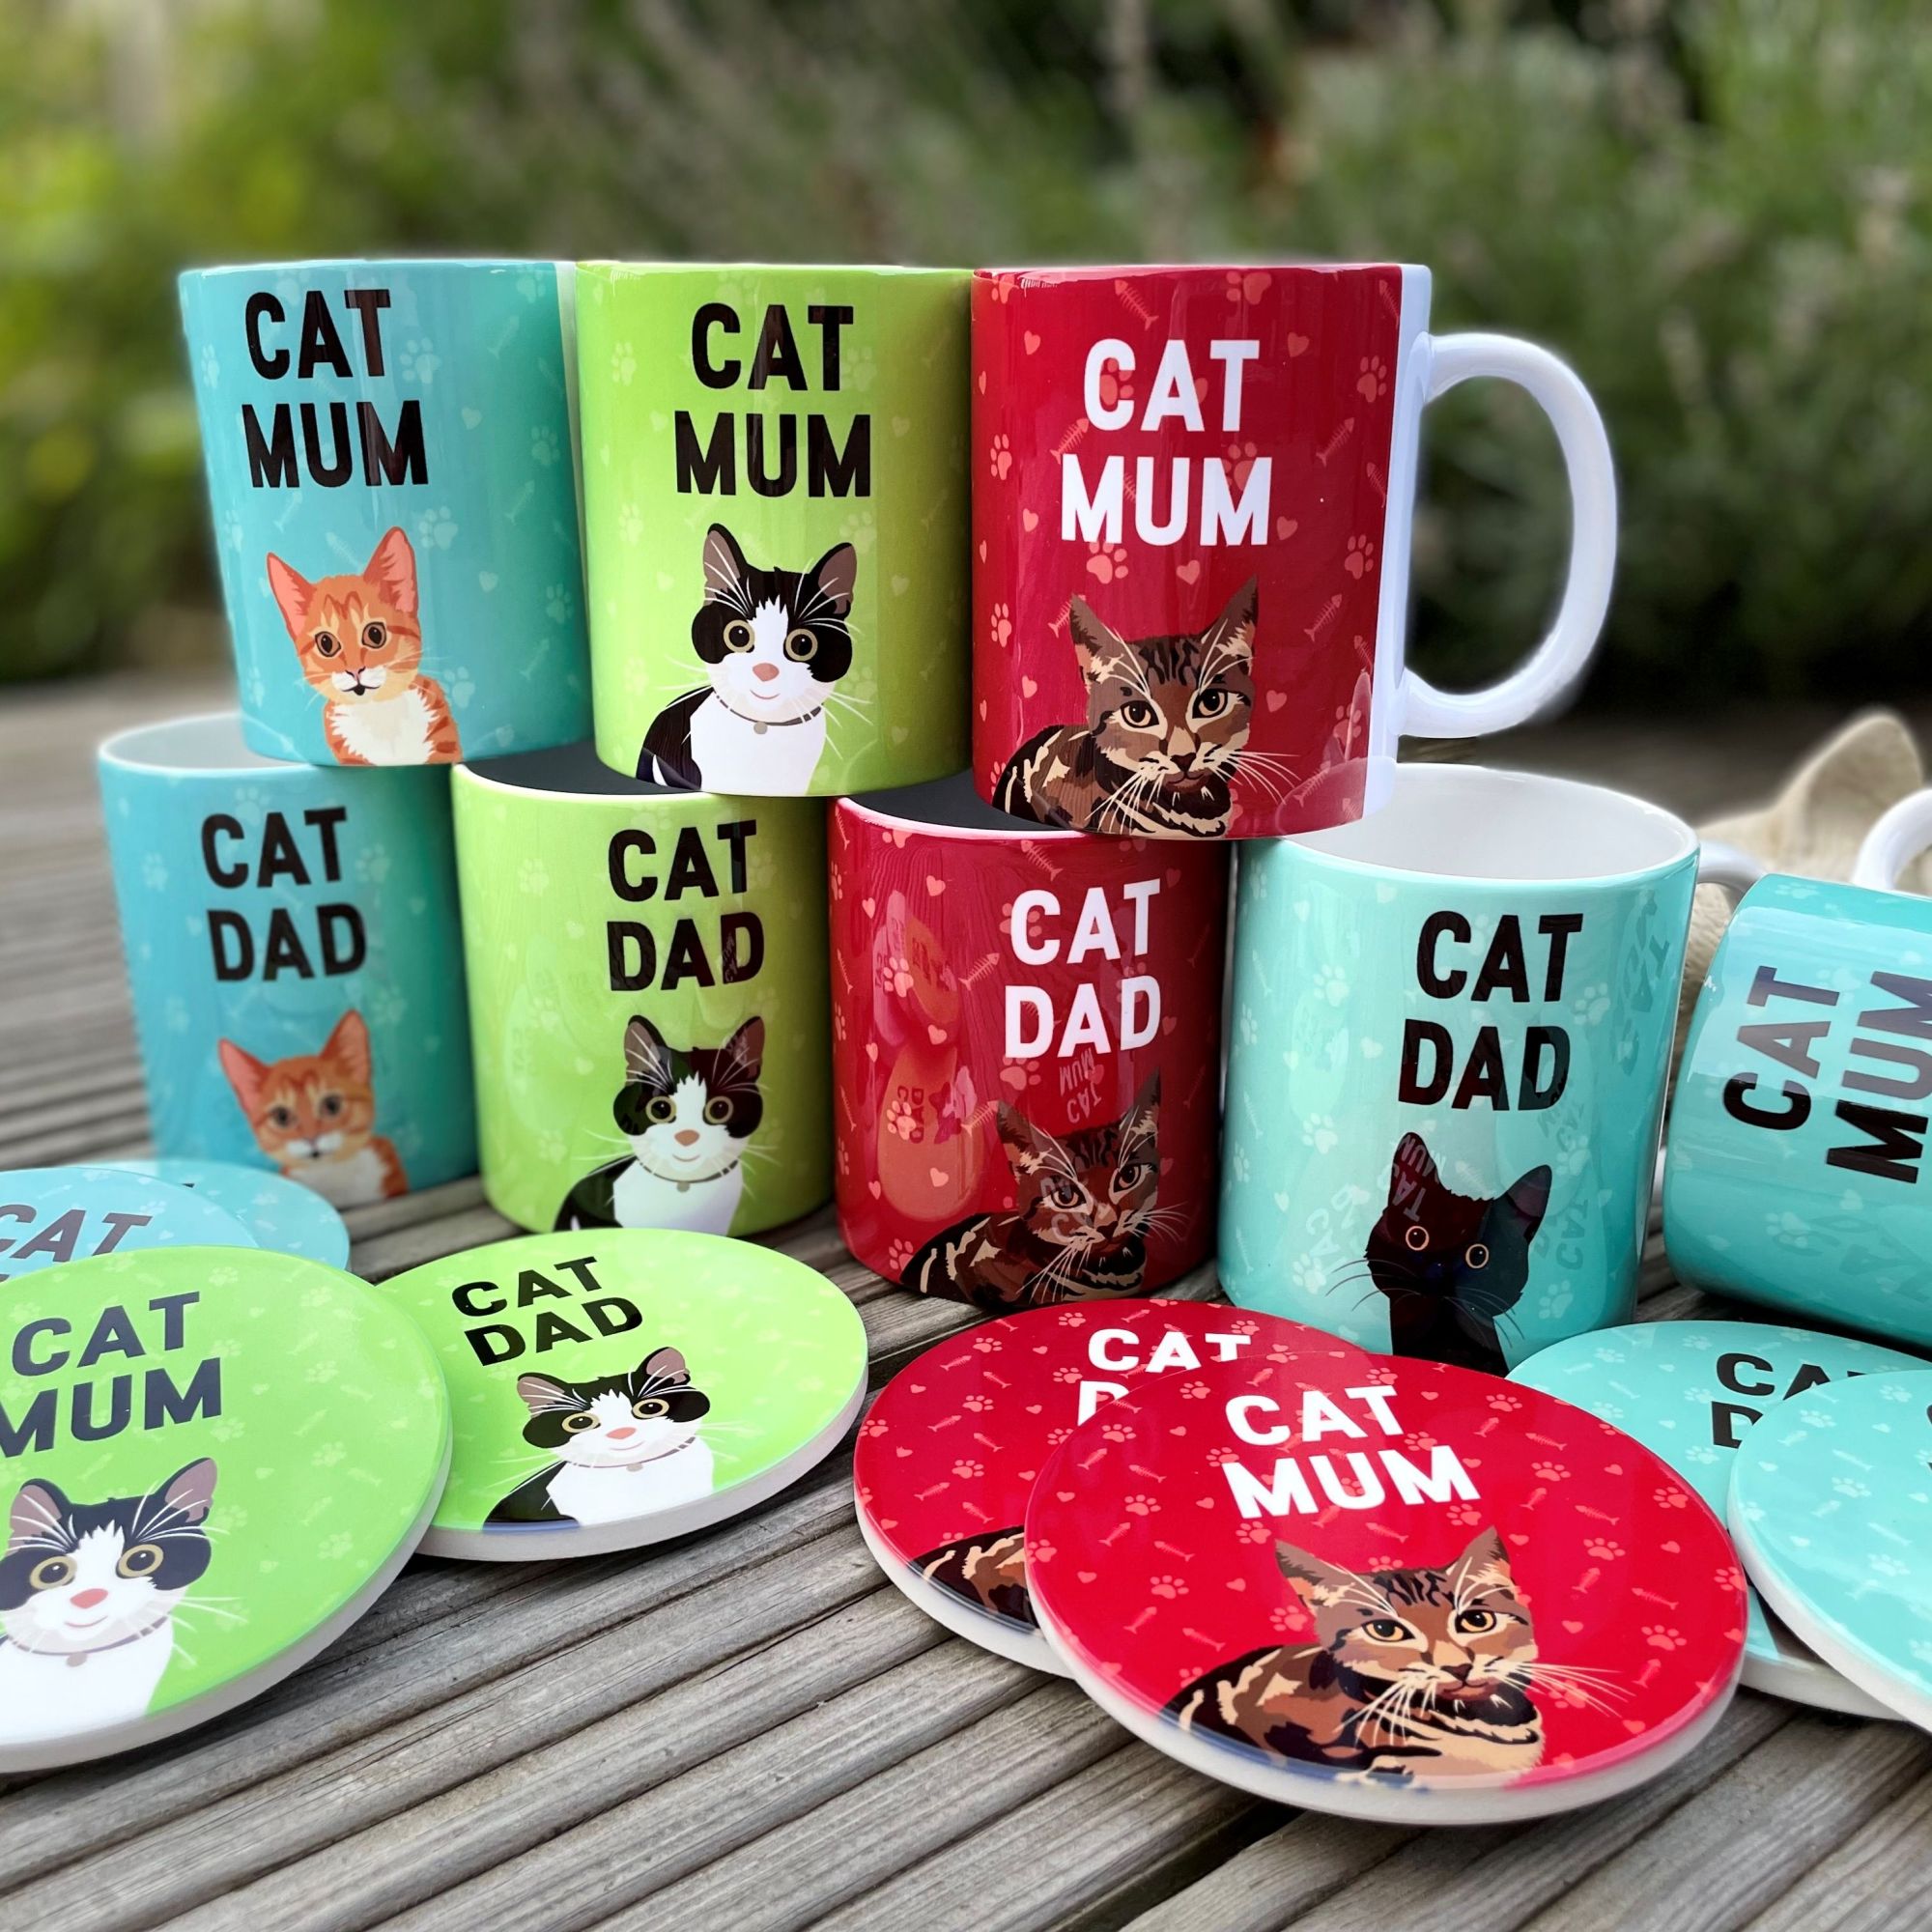 Cat Mum Mug & Coaster, Tabby Cat